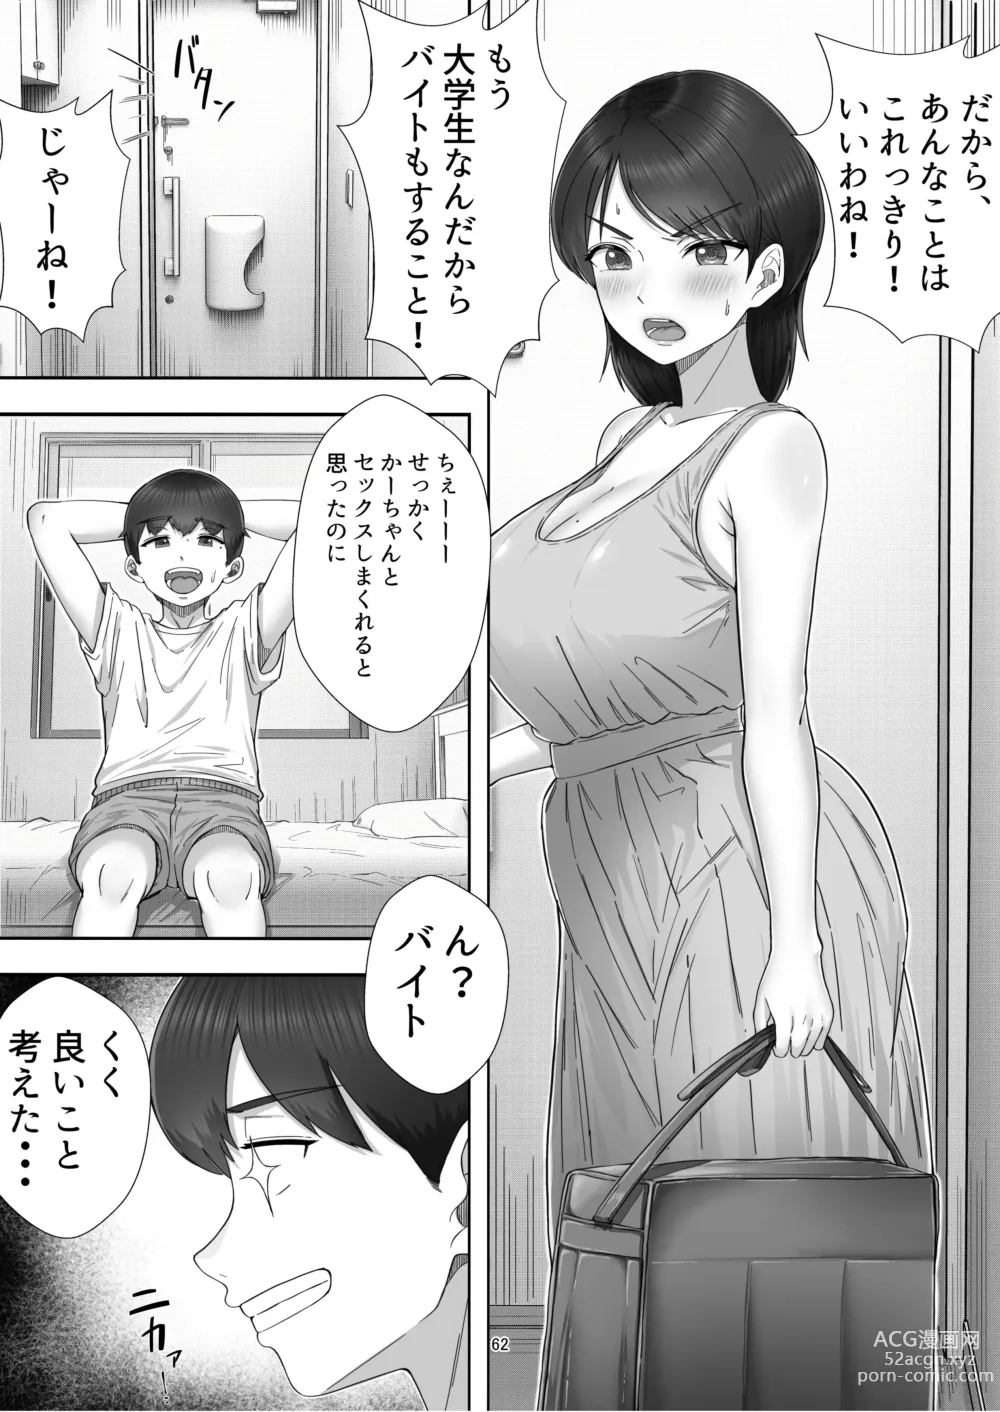 Page 62 of doujinshi DeliHeal Yondara Gachi no Kaa-chan ga Kita Hanashi.